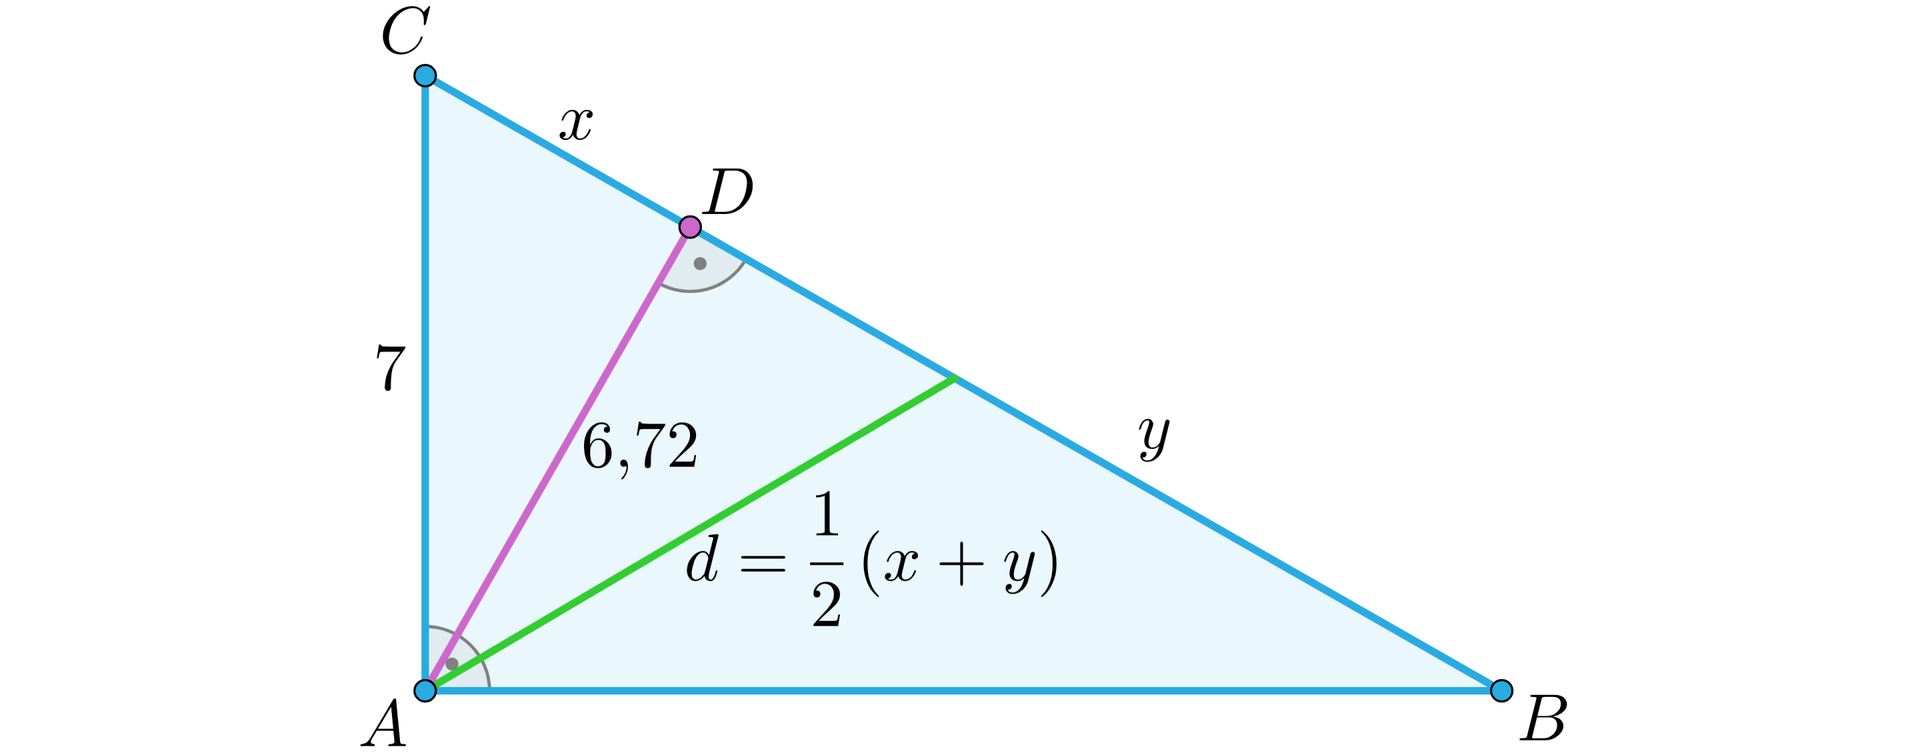 Ilustracja przedstawia trójkąt prostokątny A B C, gdzie kąt BAC jest kątem prostym. Bok AC ma długość siedem. Z wierzchołka A na bok BC poprowadzono wysokość, której spodek podpisano literą D, a jej długość wynosi sześć i siedemdziesiąt dwie setne. Z punktu A na bok BC poprowadzono również odcinek o długości d=12x+y, który dzieli przeciwprostokątną BC na dwa odcinki, w stronę wierzchołka c odcinek x, a w stronę wierzchołka B odcinek y.